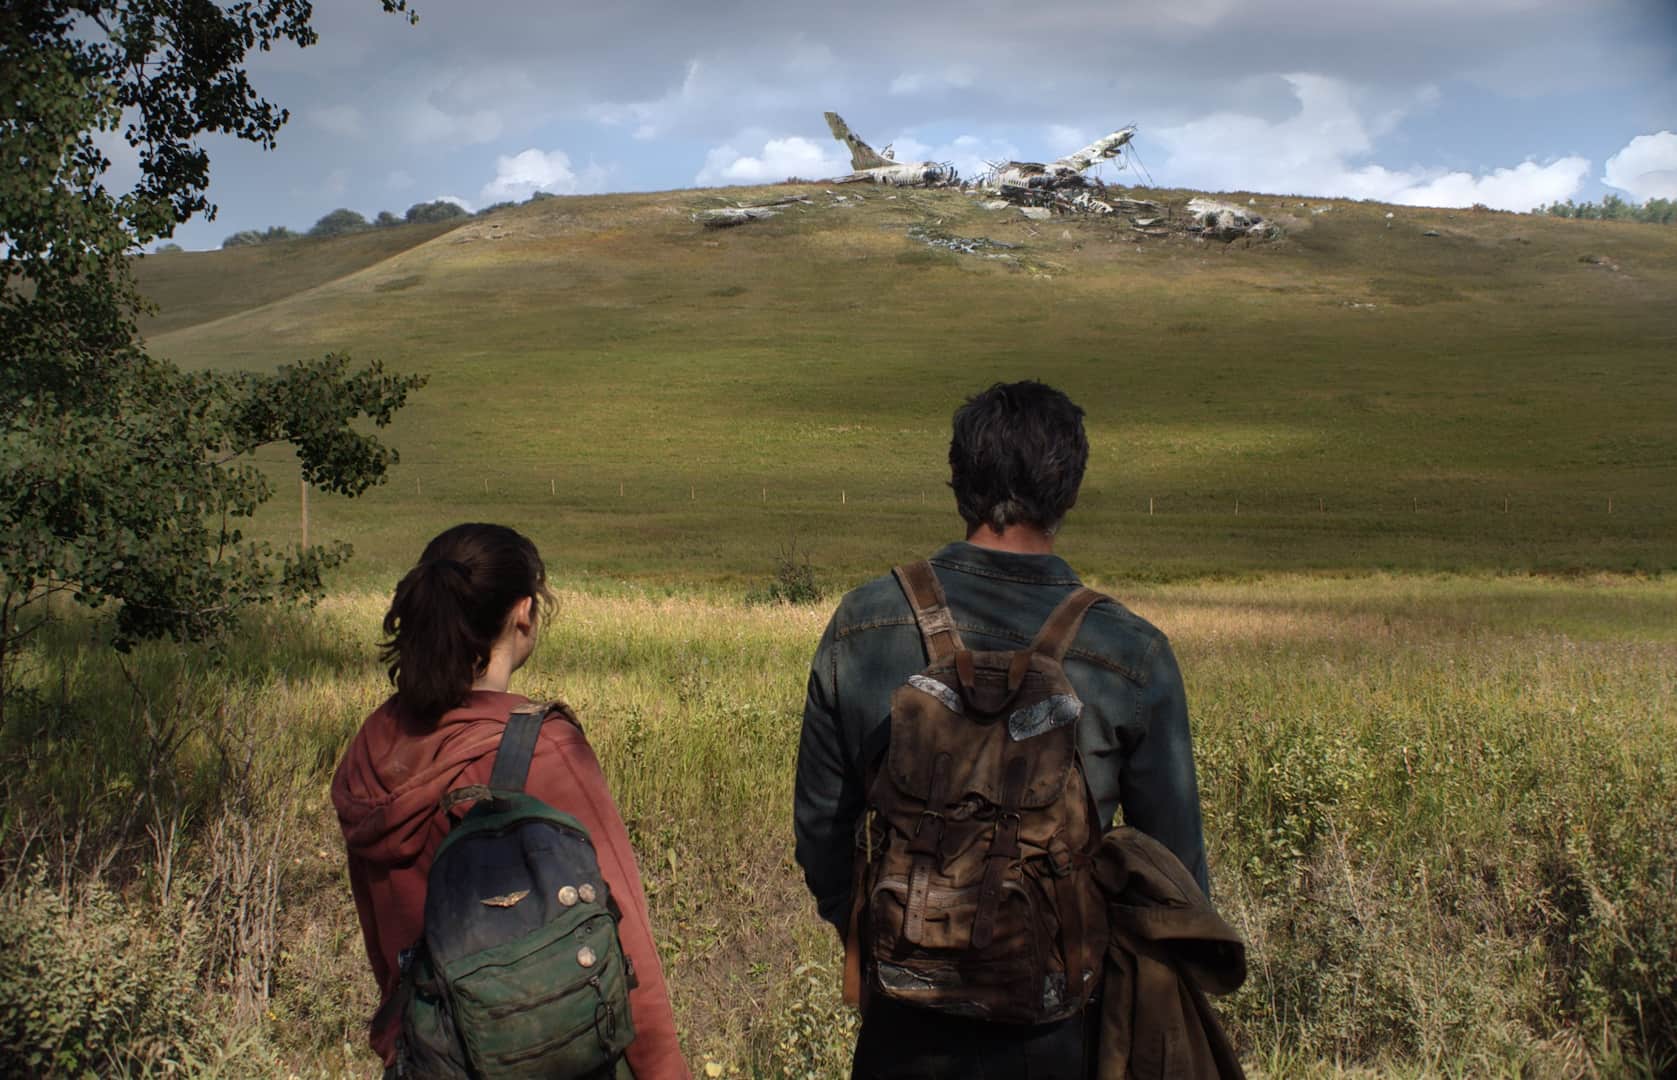 The Last of Us Série  Onde assistir, horários e datas dos novos episódios